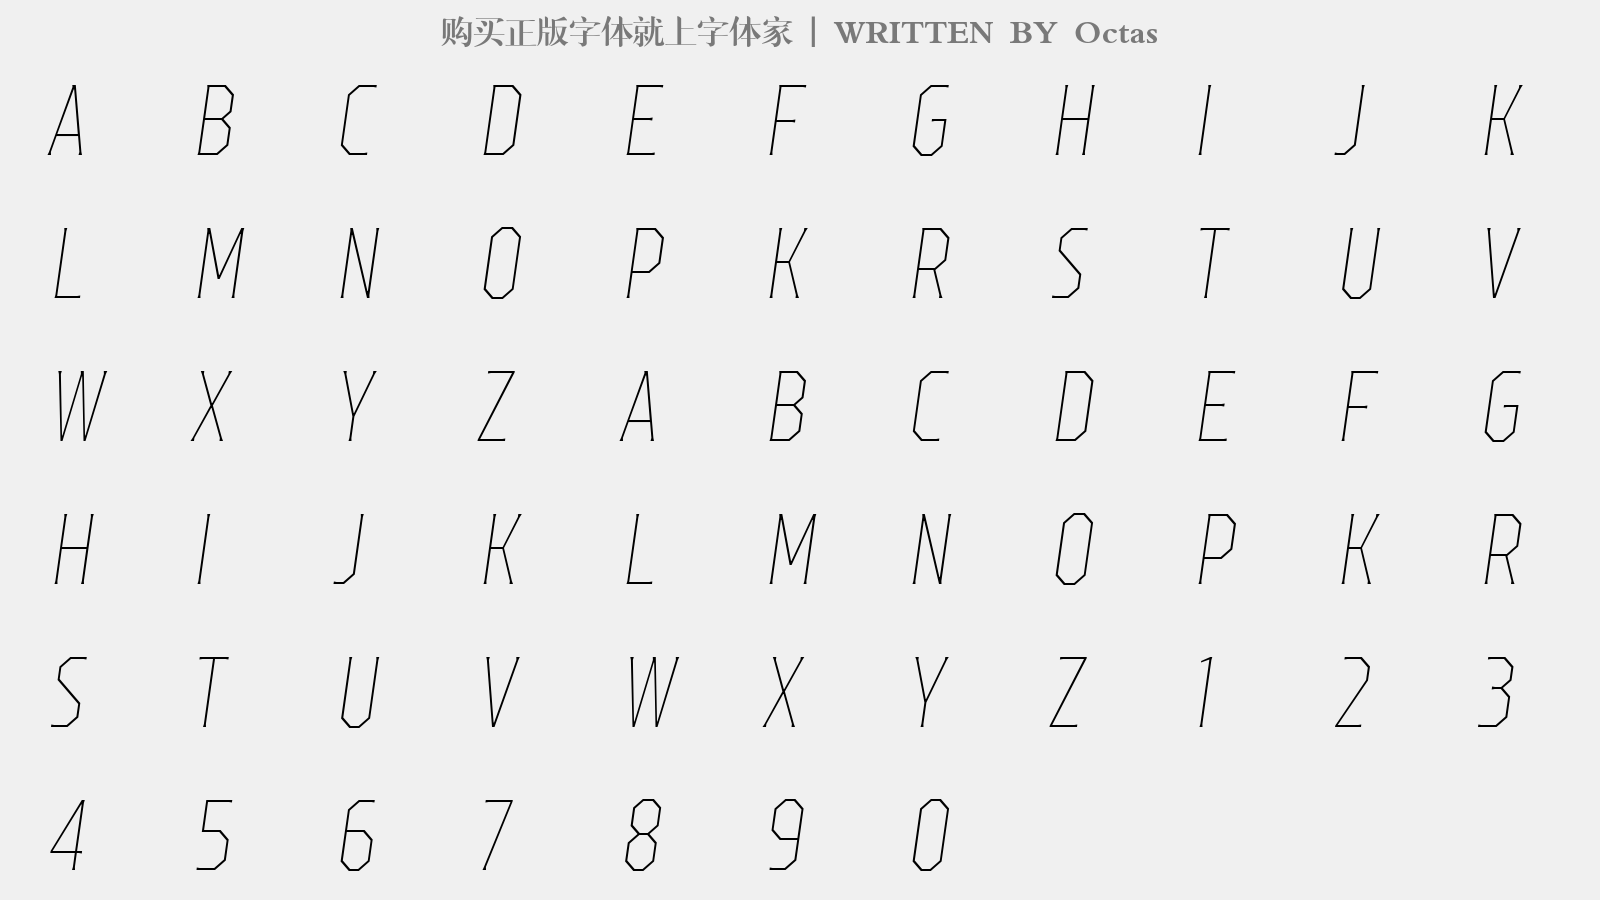 Octas - 大写字母/小写字母/数字